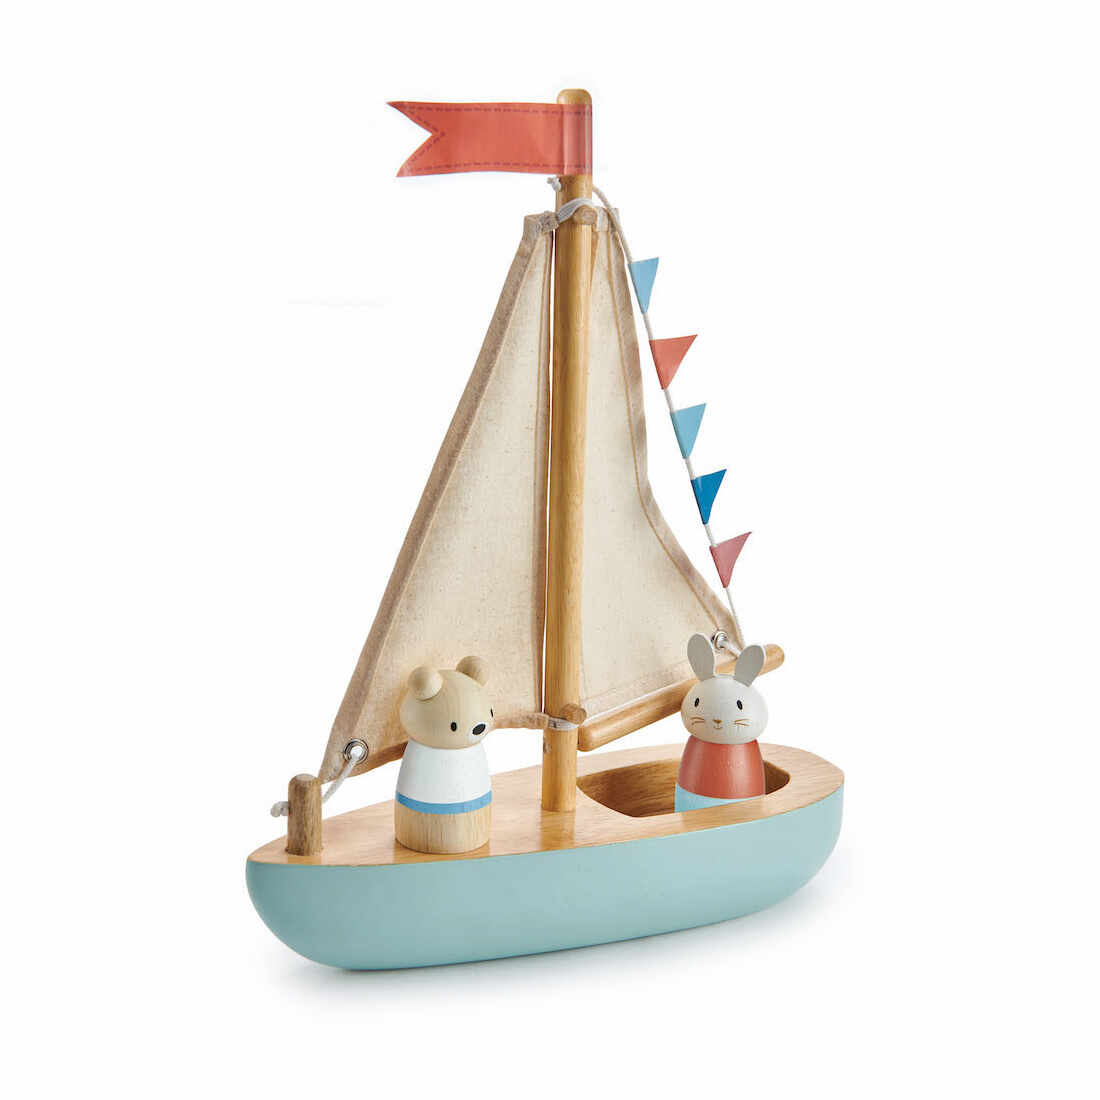 Barca din lemn a lui Bubble si Squeak, Tender Leaf Toys, Sailaway Boat